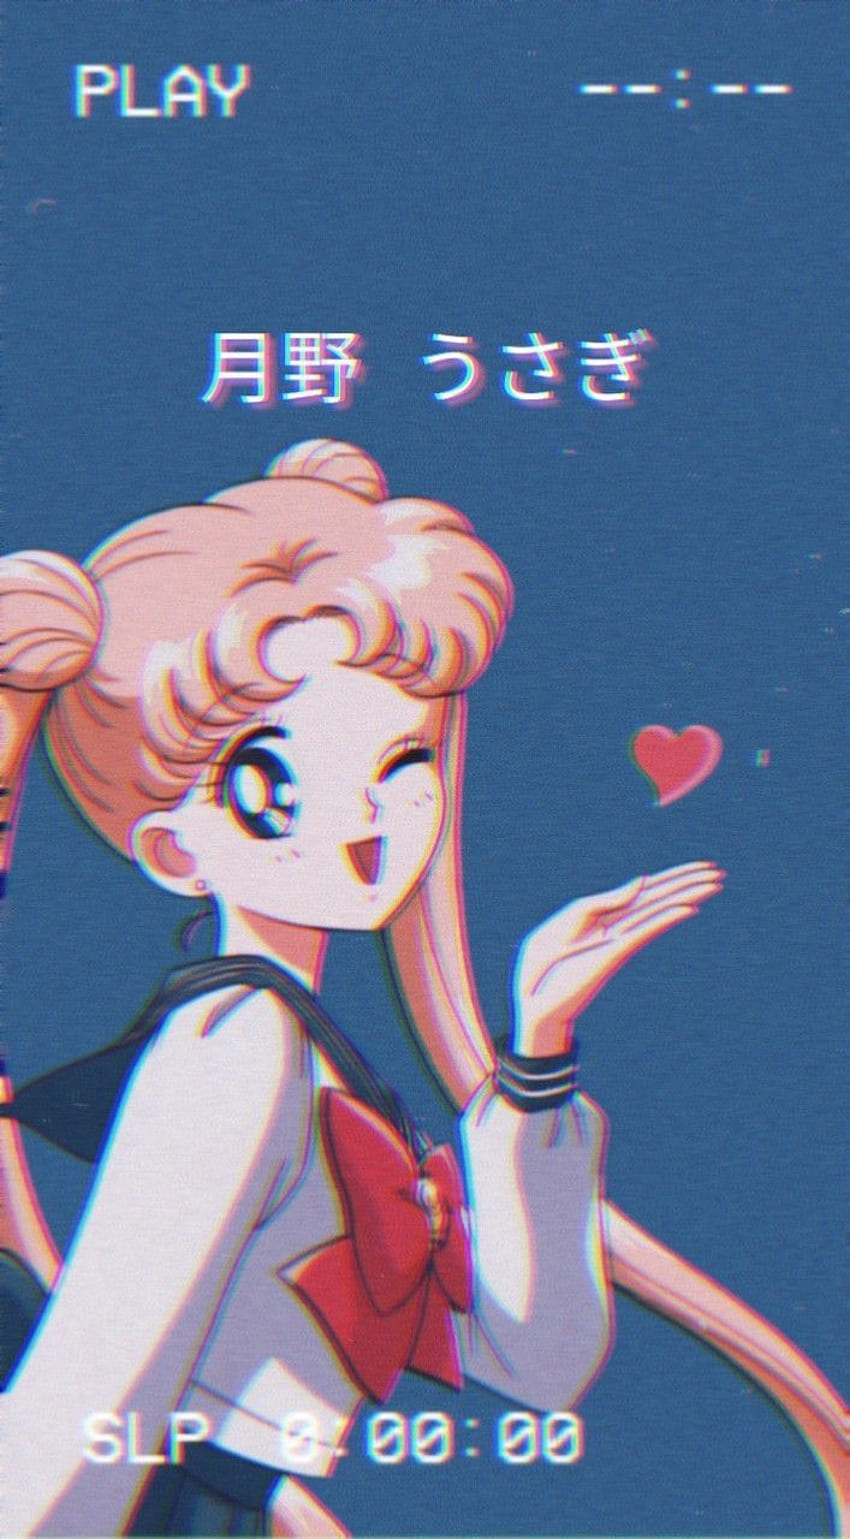 Sailor moon wallpaper by Moonneko22 - Download on ZEDGE™ | 48c1